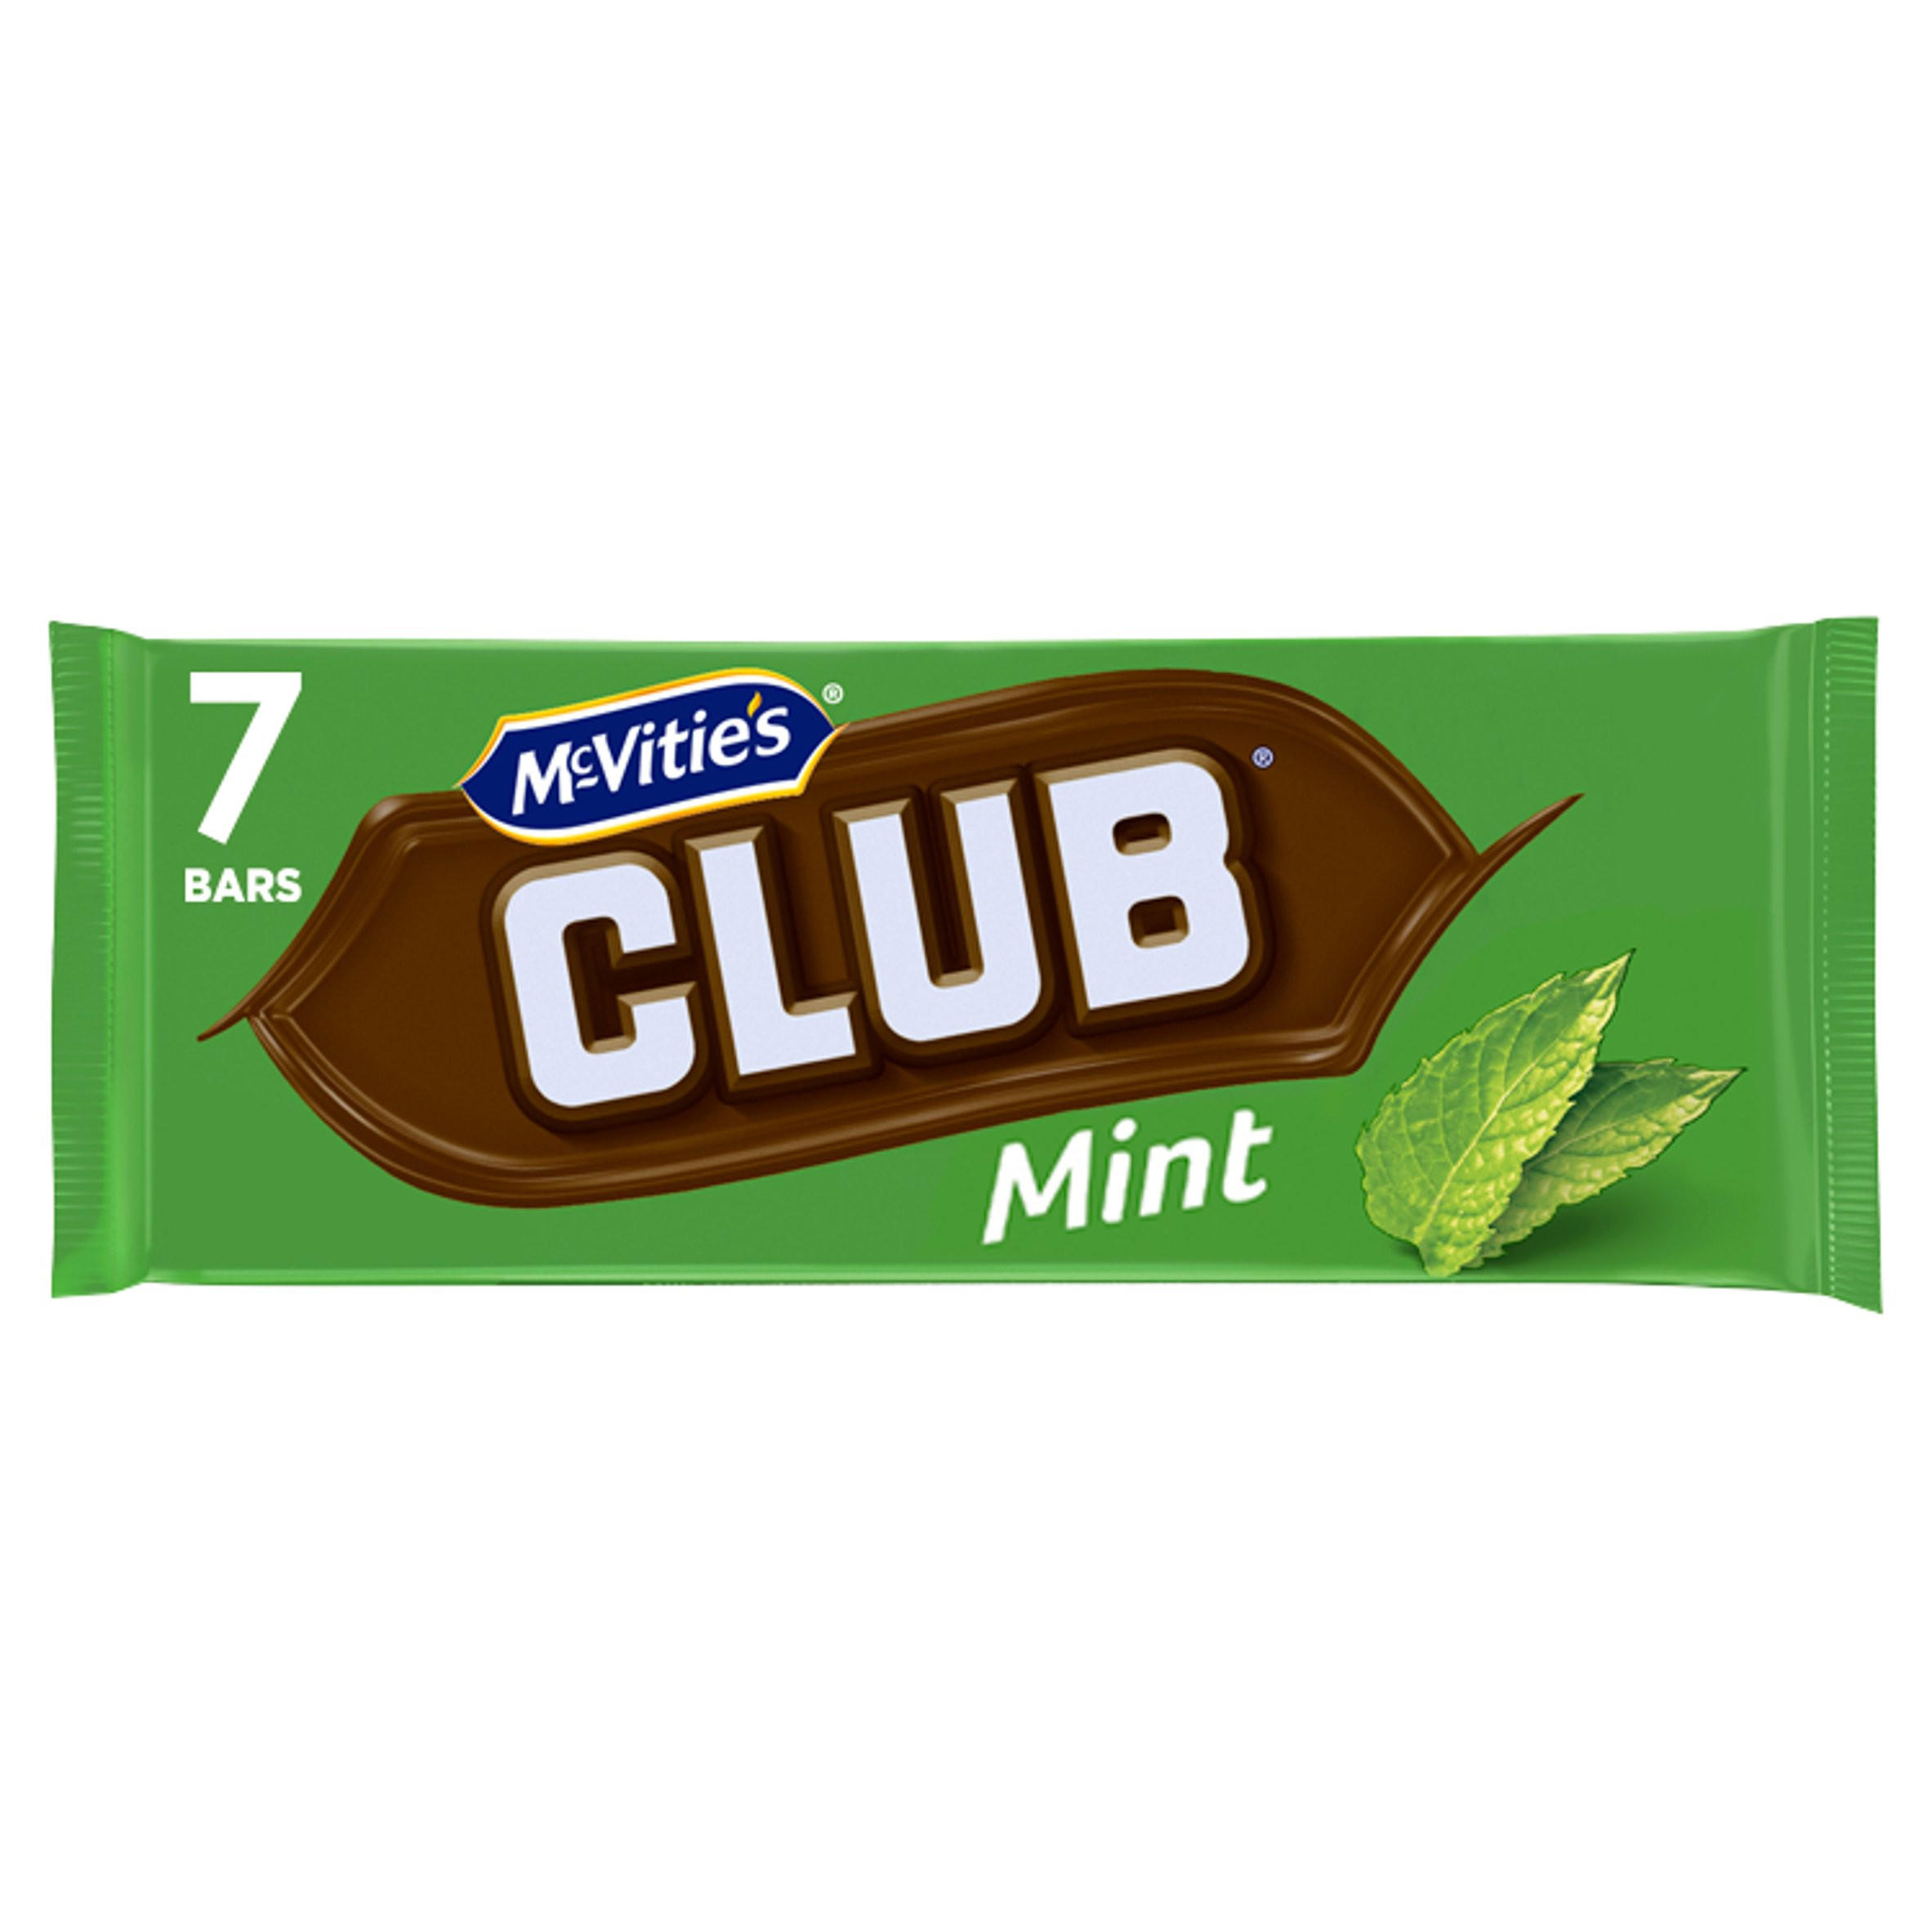 mcvities_club_mint_bars_7_x_22g_154g_73537_T1.jpg